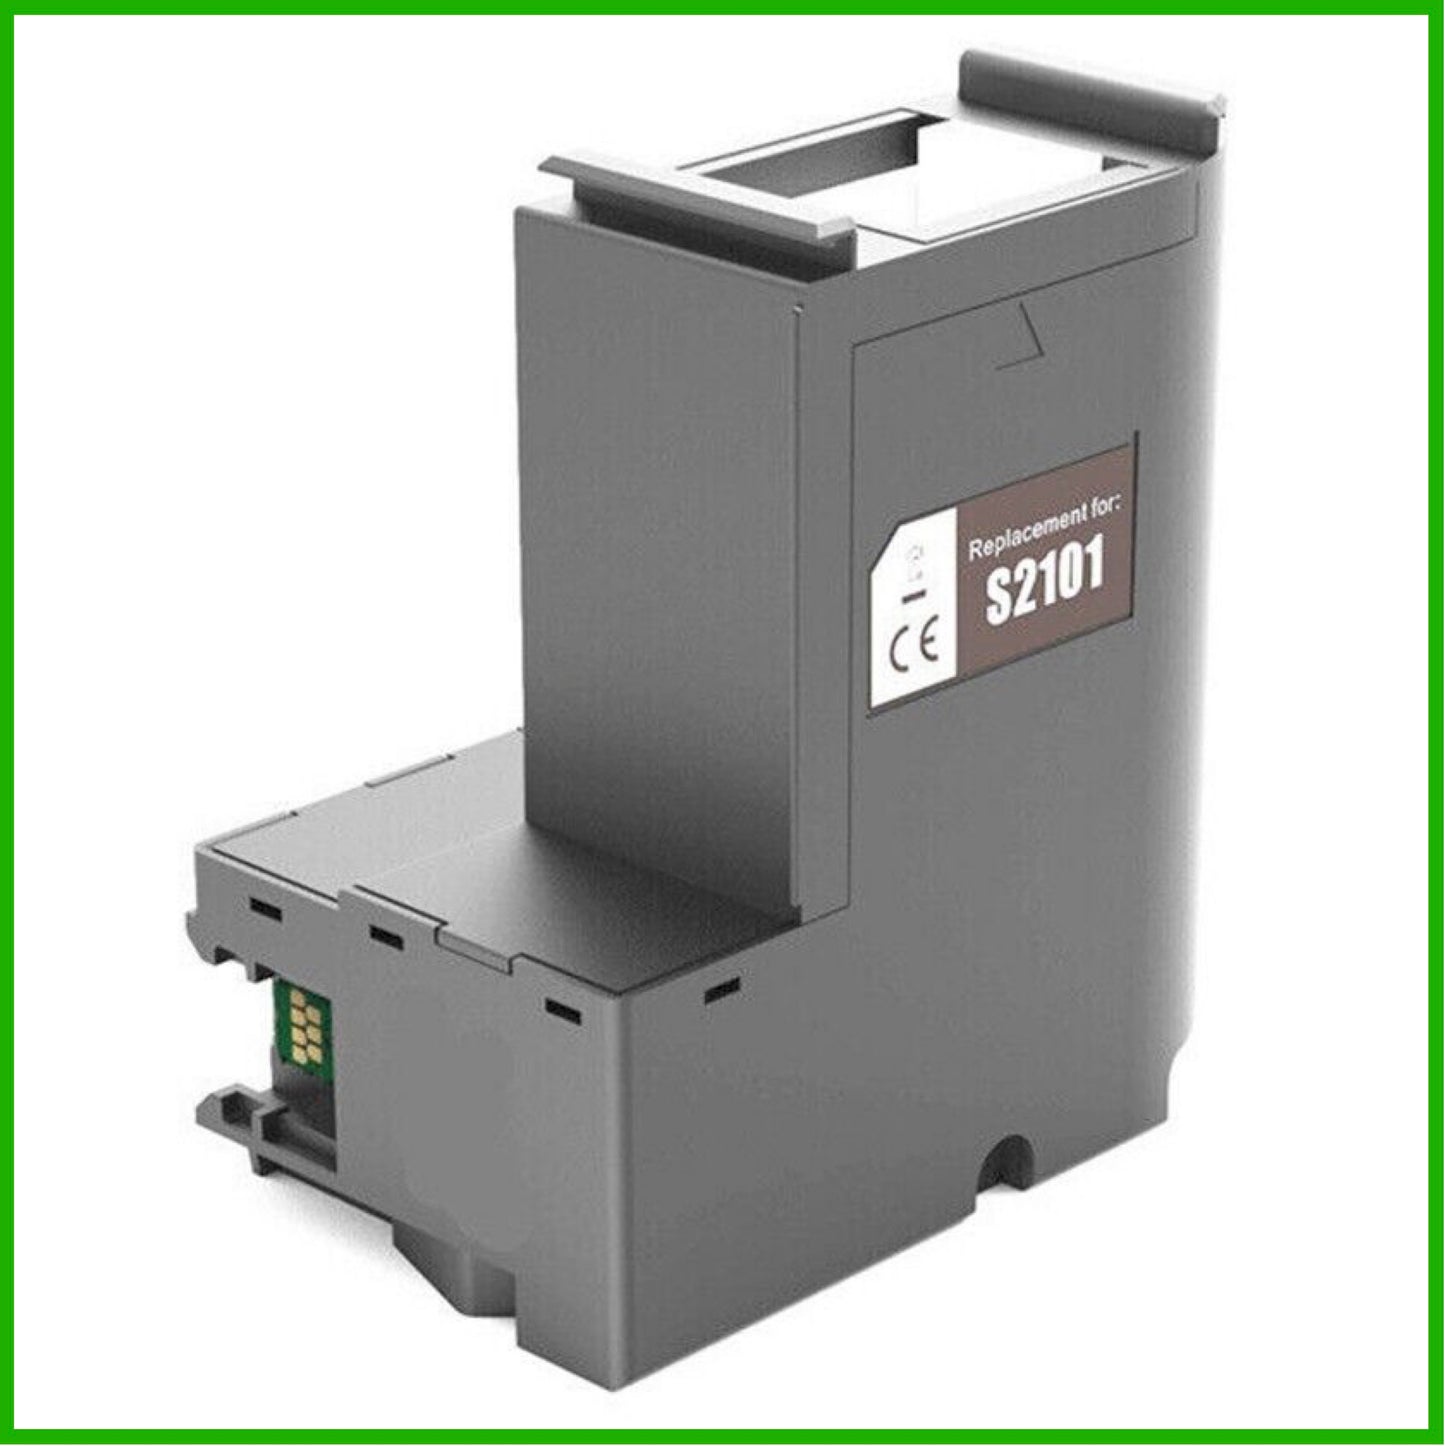 Compatible Maintenance Box for Epson SureColour Replaces S2101 (C13S210125)